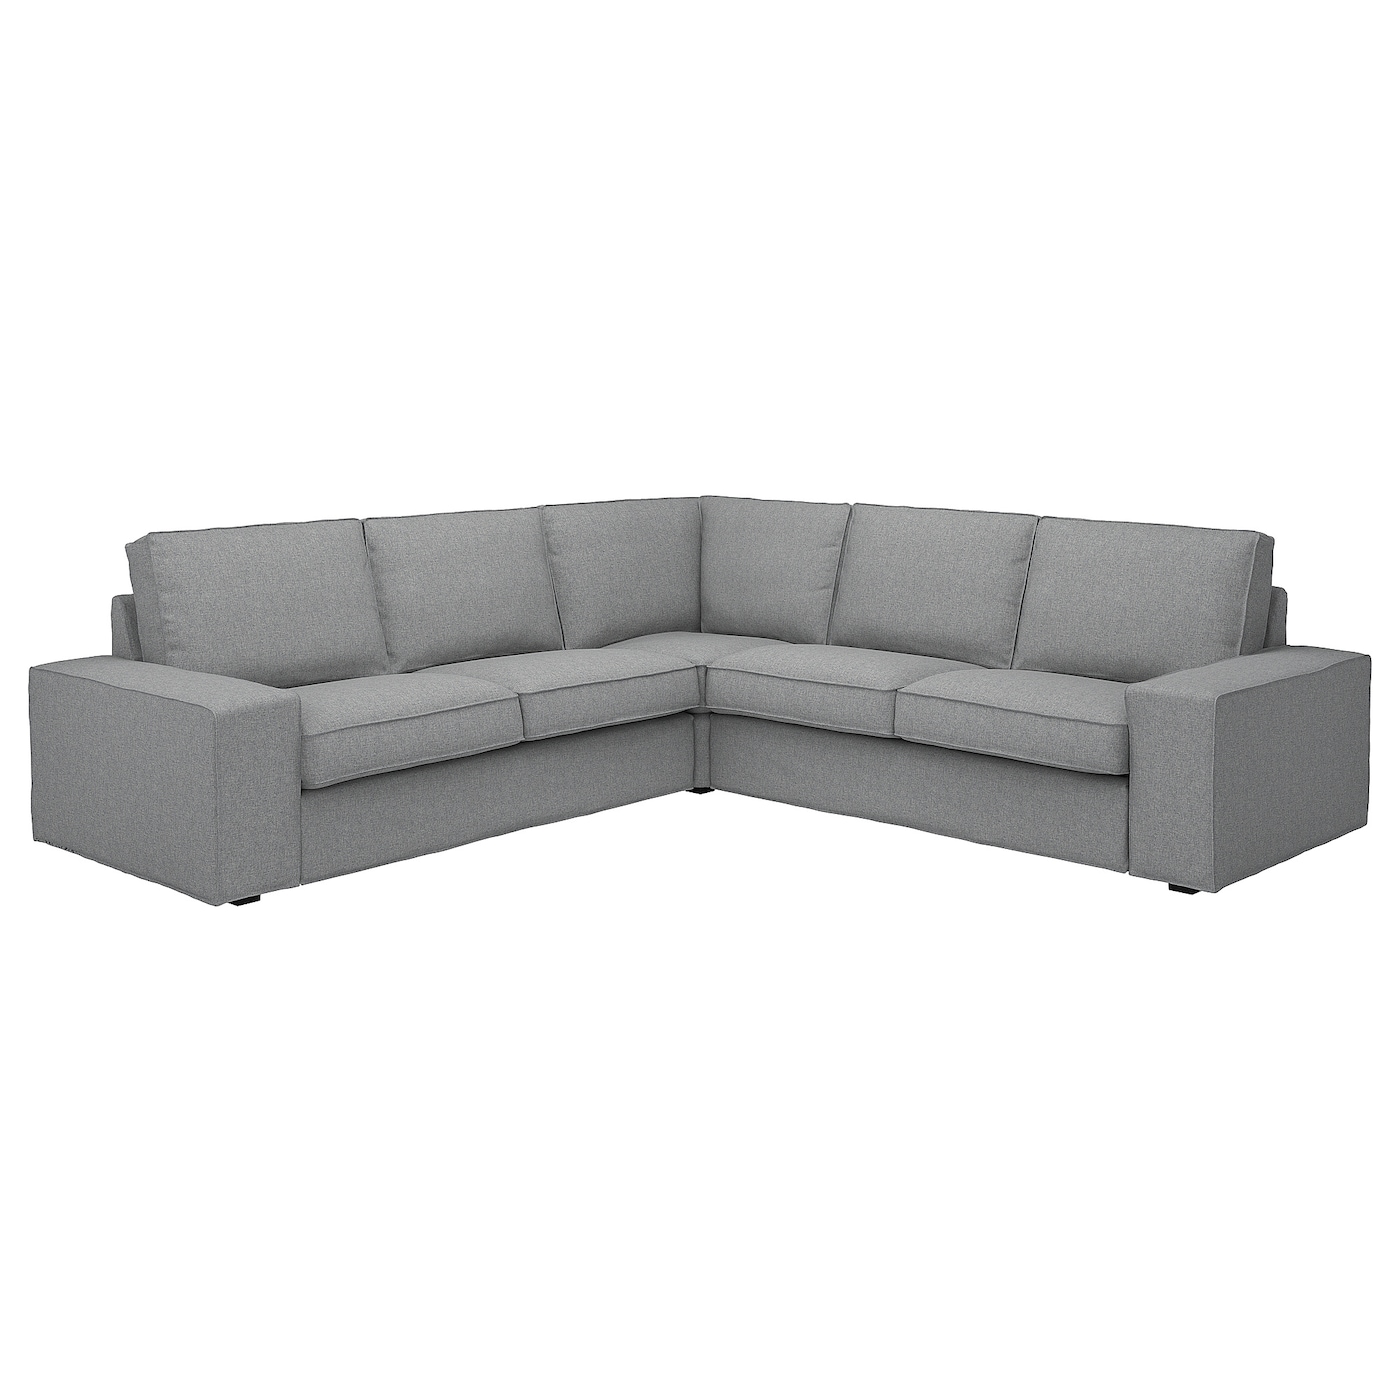 4-местный угловой диван - IKEA KIVIK, 83x95x257см, серый, КИВИК ИКЕА